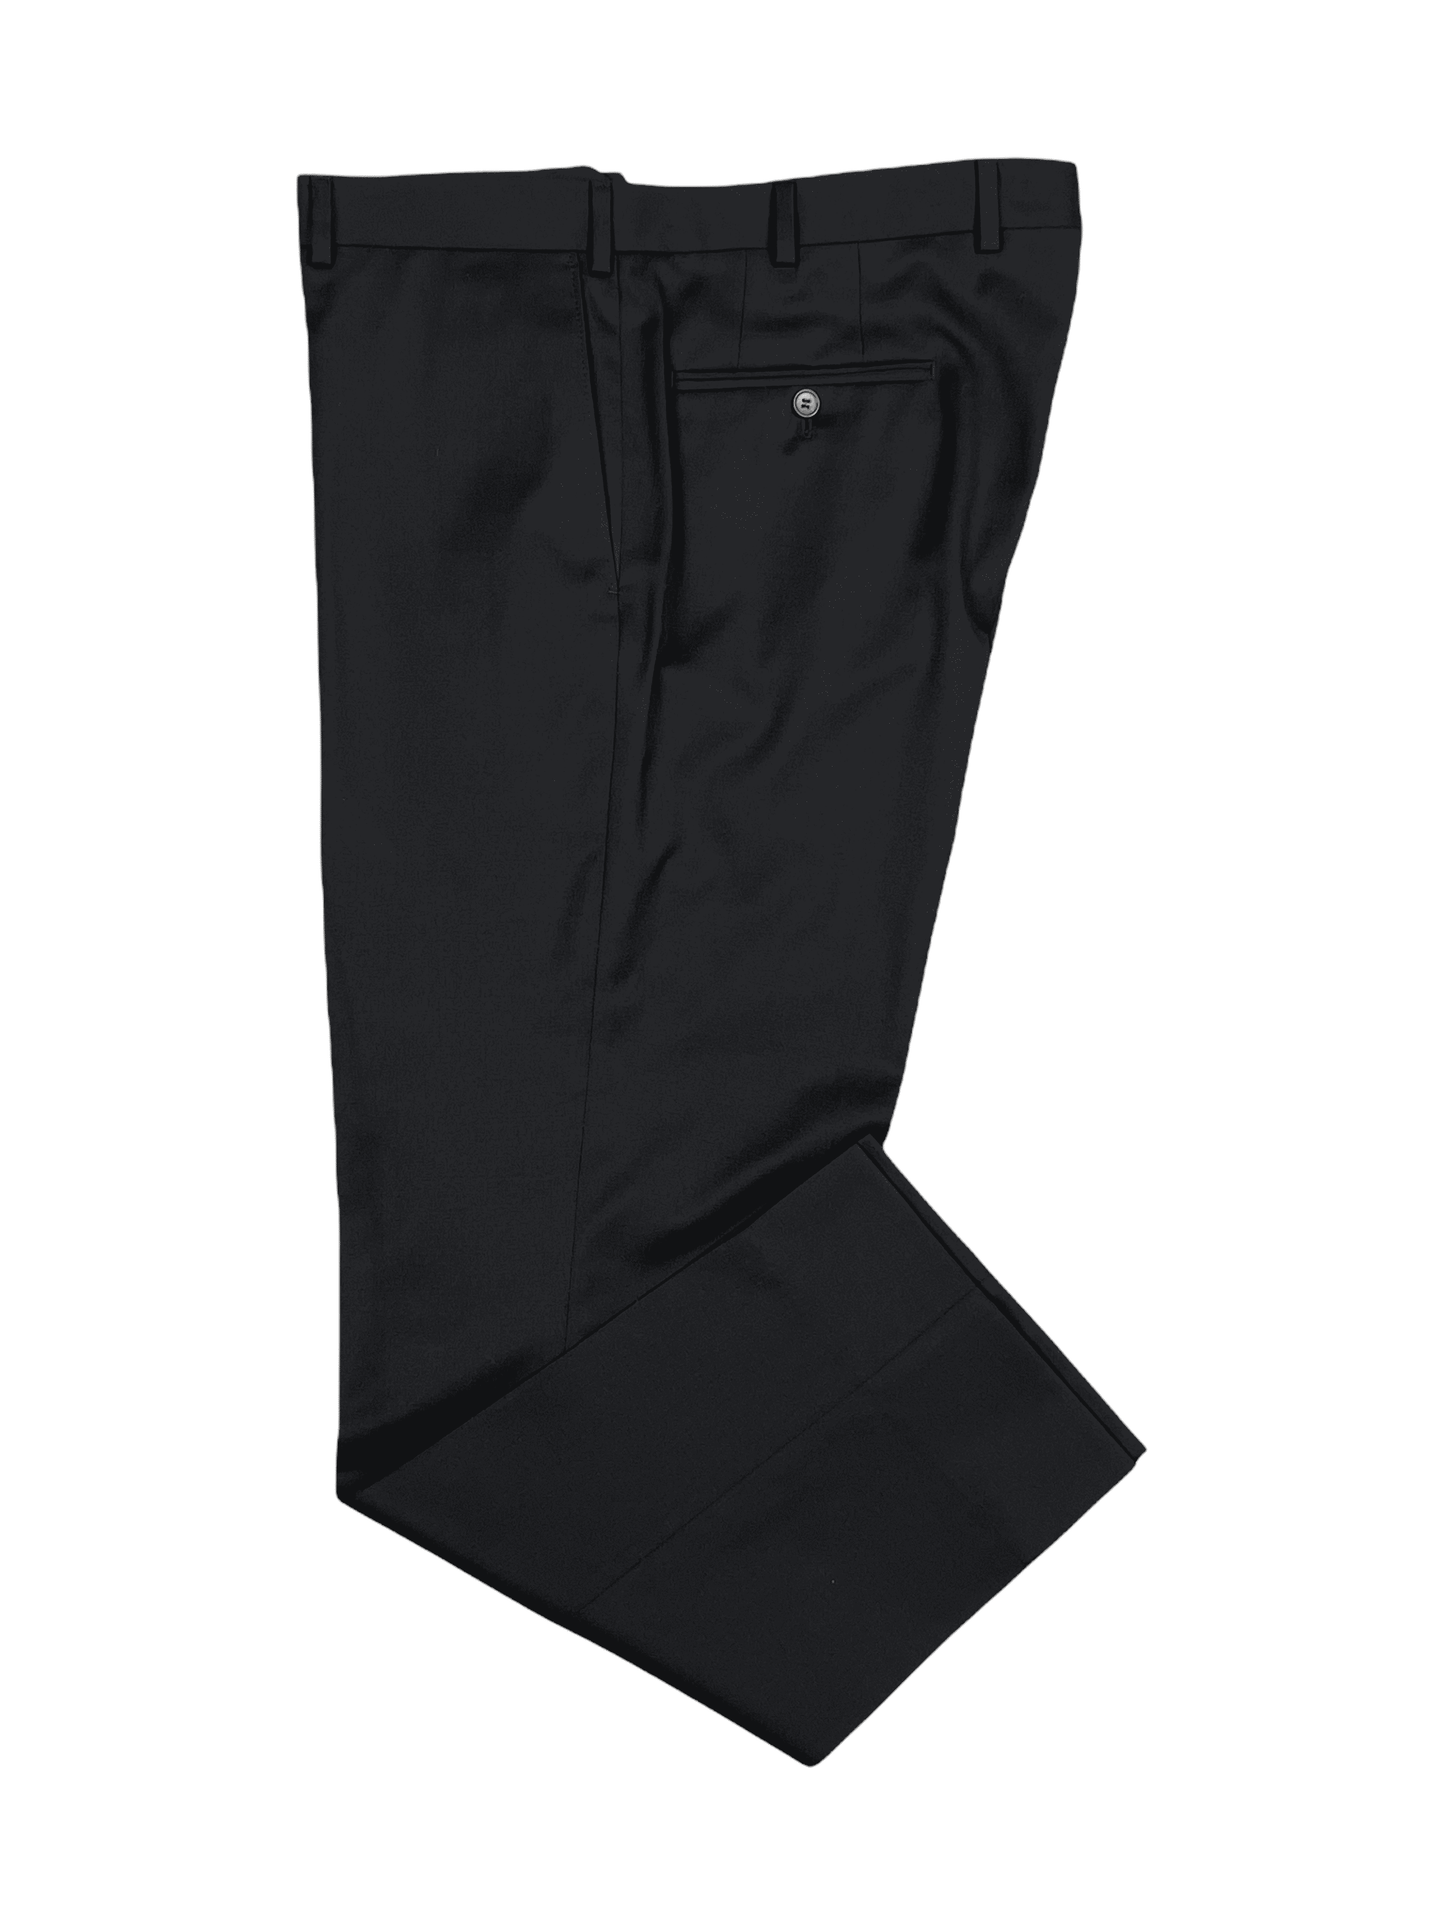 Samuelsohn Black Wool Pants 40 x 32